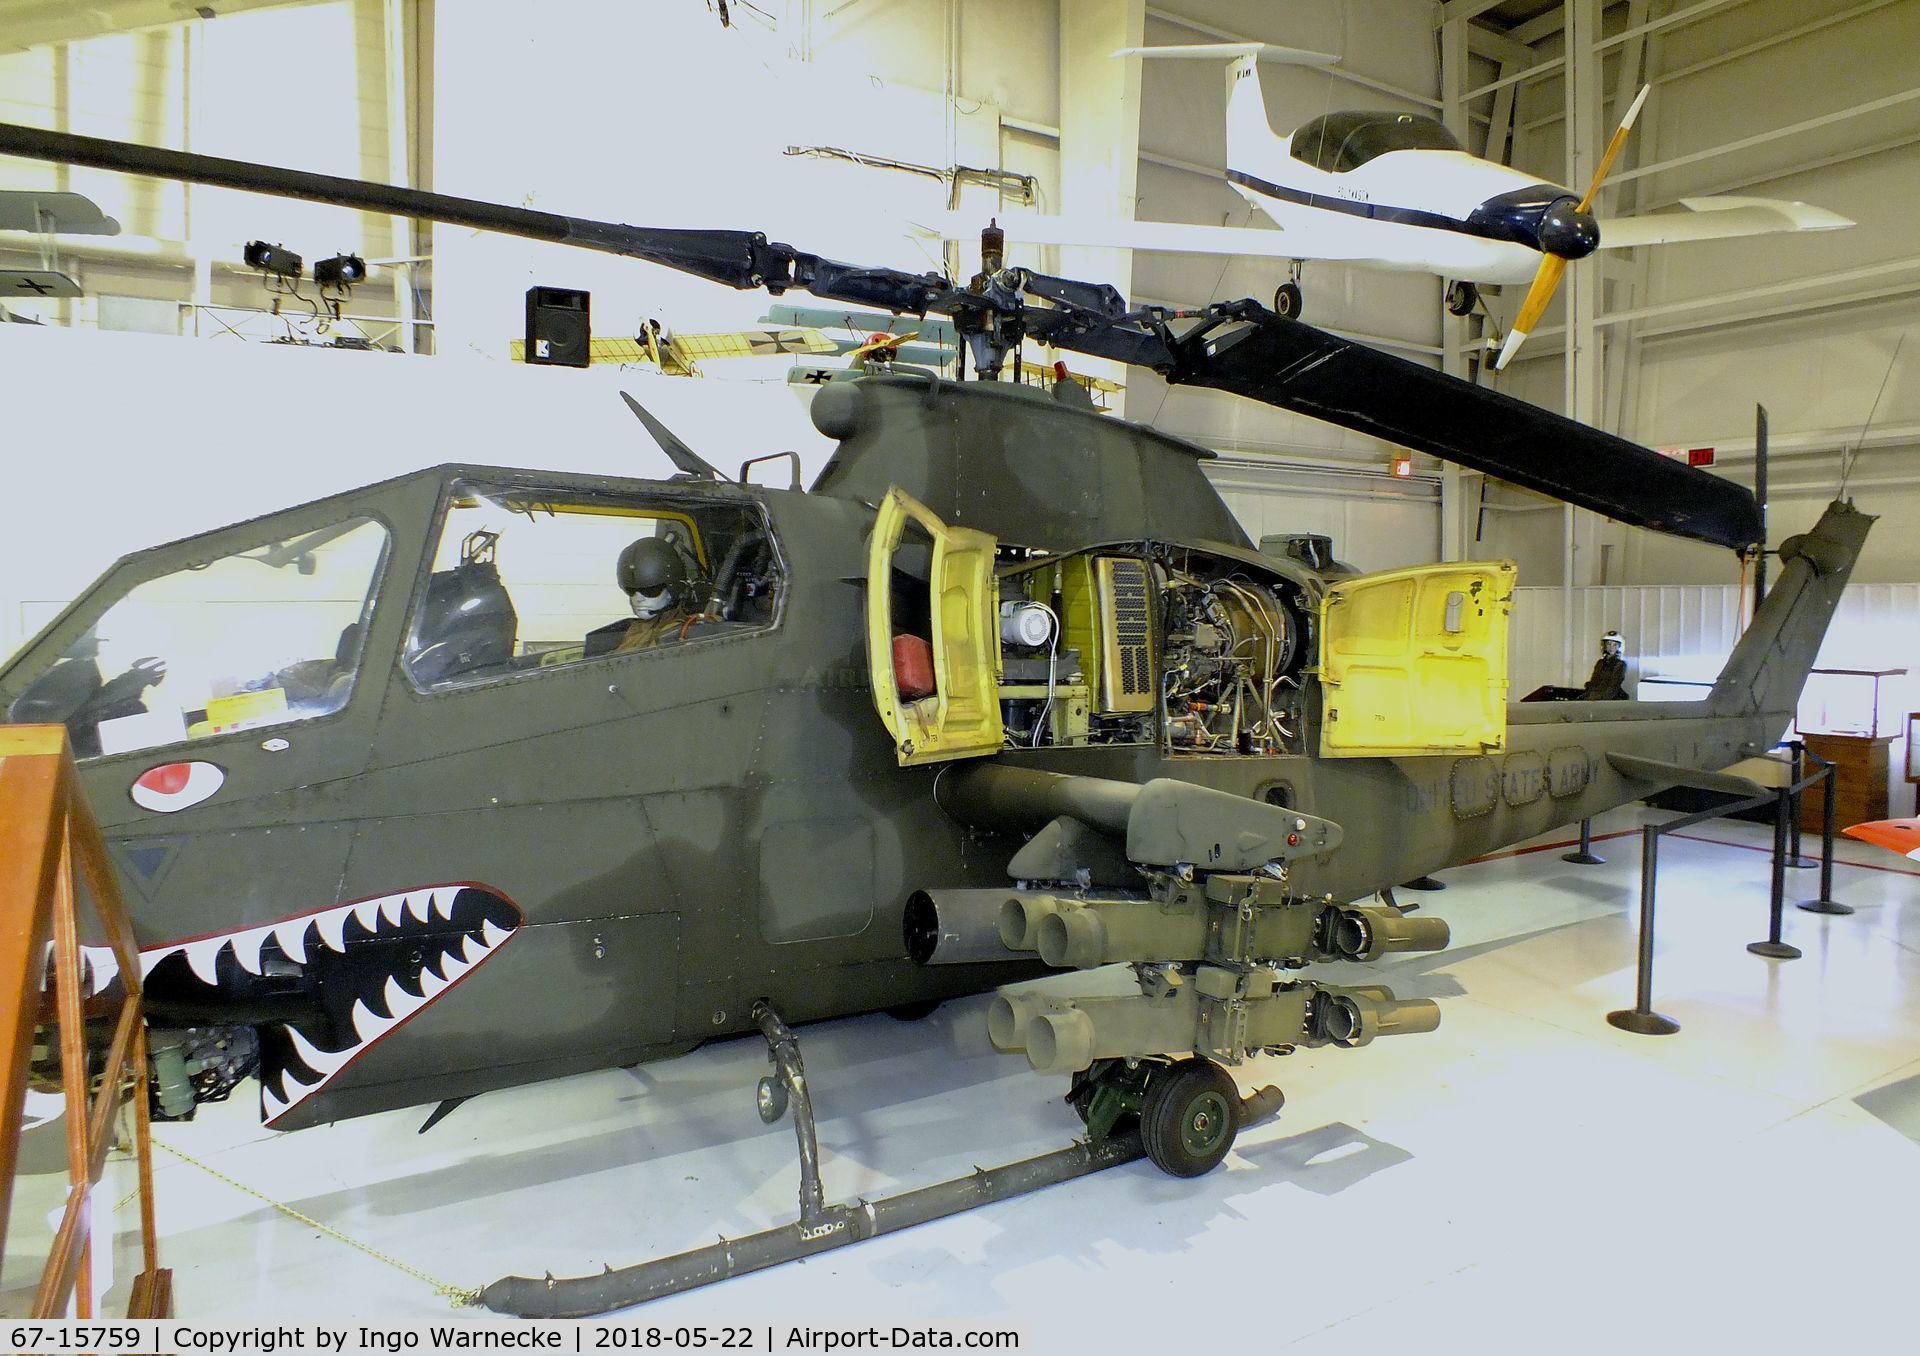 67-15759, 1967 Bell AH-1F Cobra C/N 20423, Bell AH-1F Cobra at the Aviation Museum of Kentucky, Lexington KY